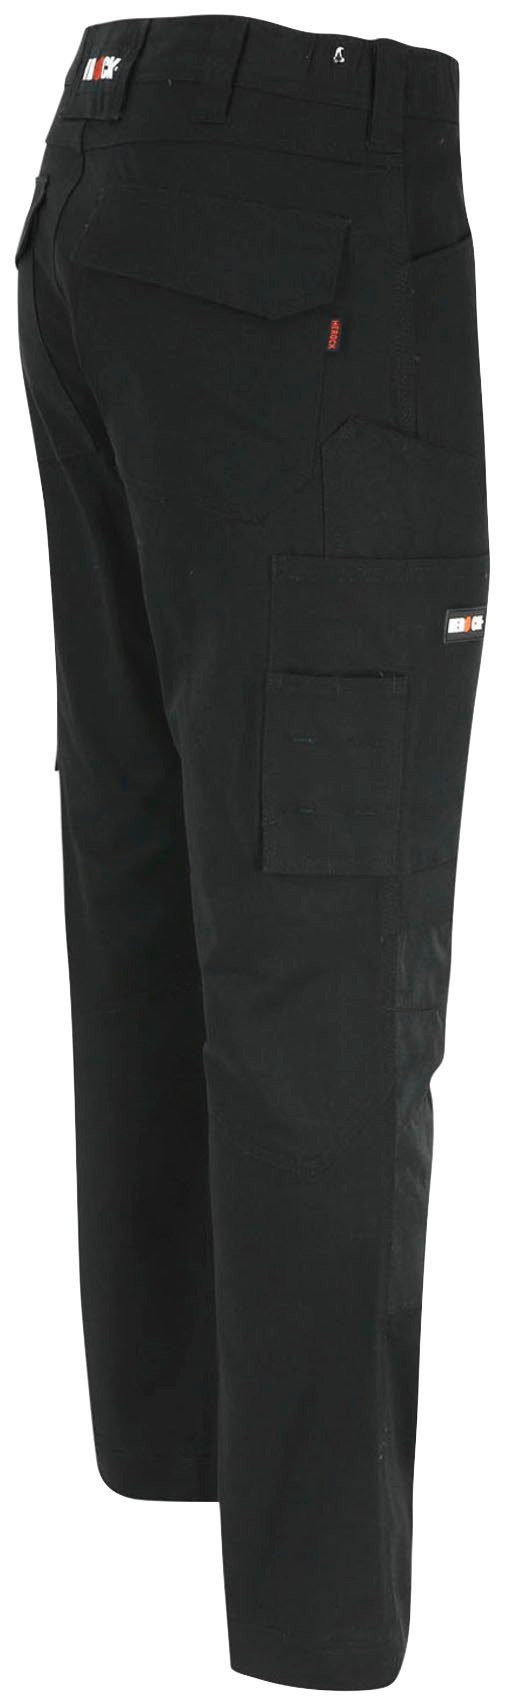 Passform, Multi-Pocket, wasserabweisend schwarz DERO Fit Herock Arbeitshose Slim 2-Wege-Stretch,